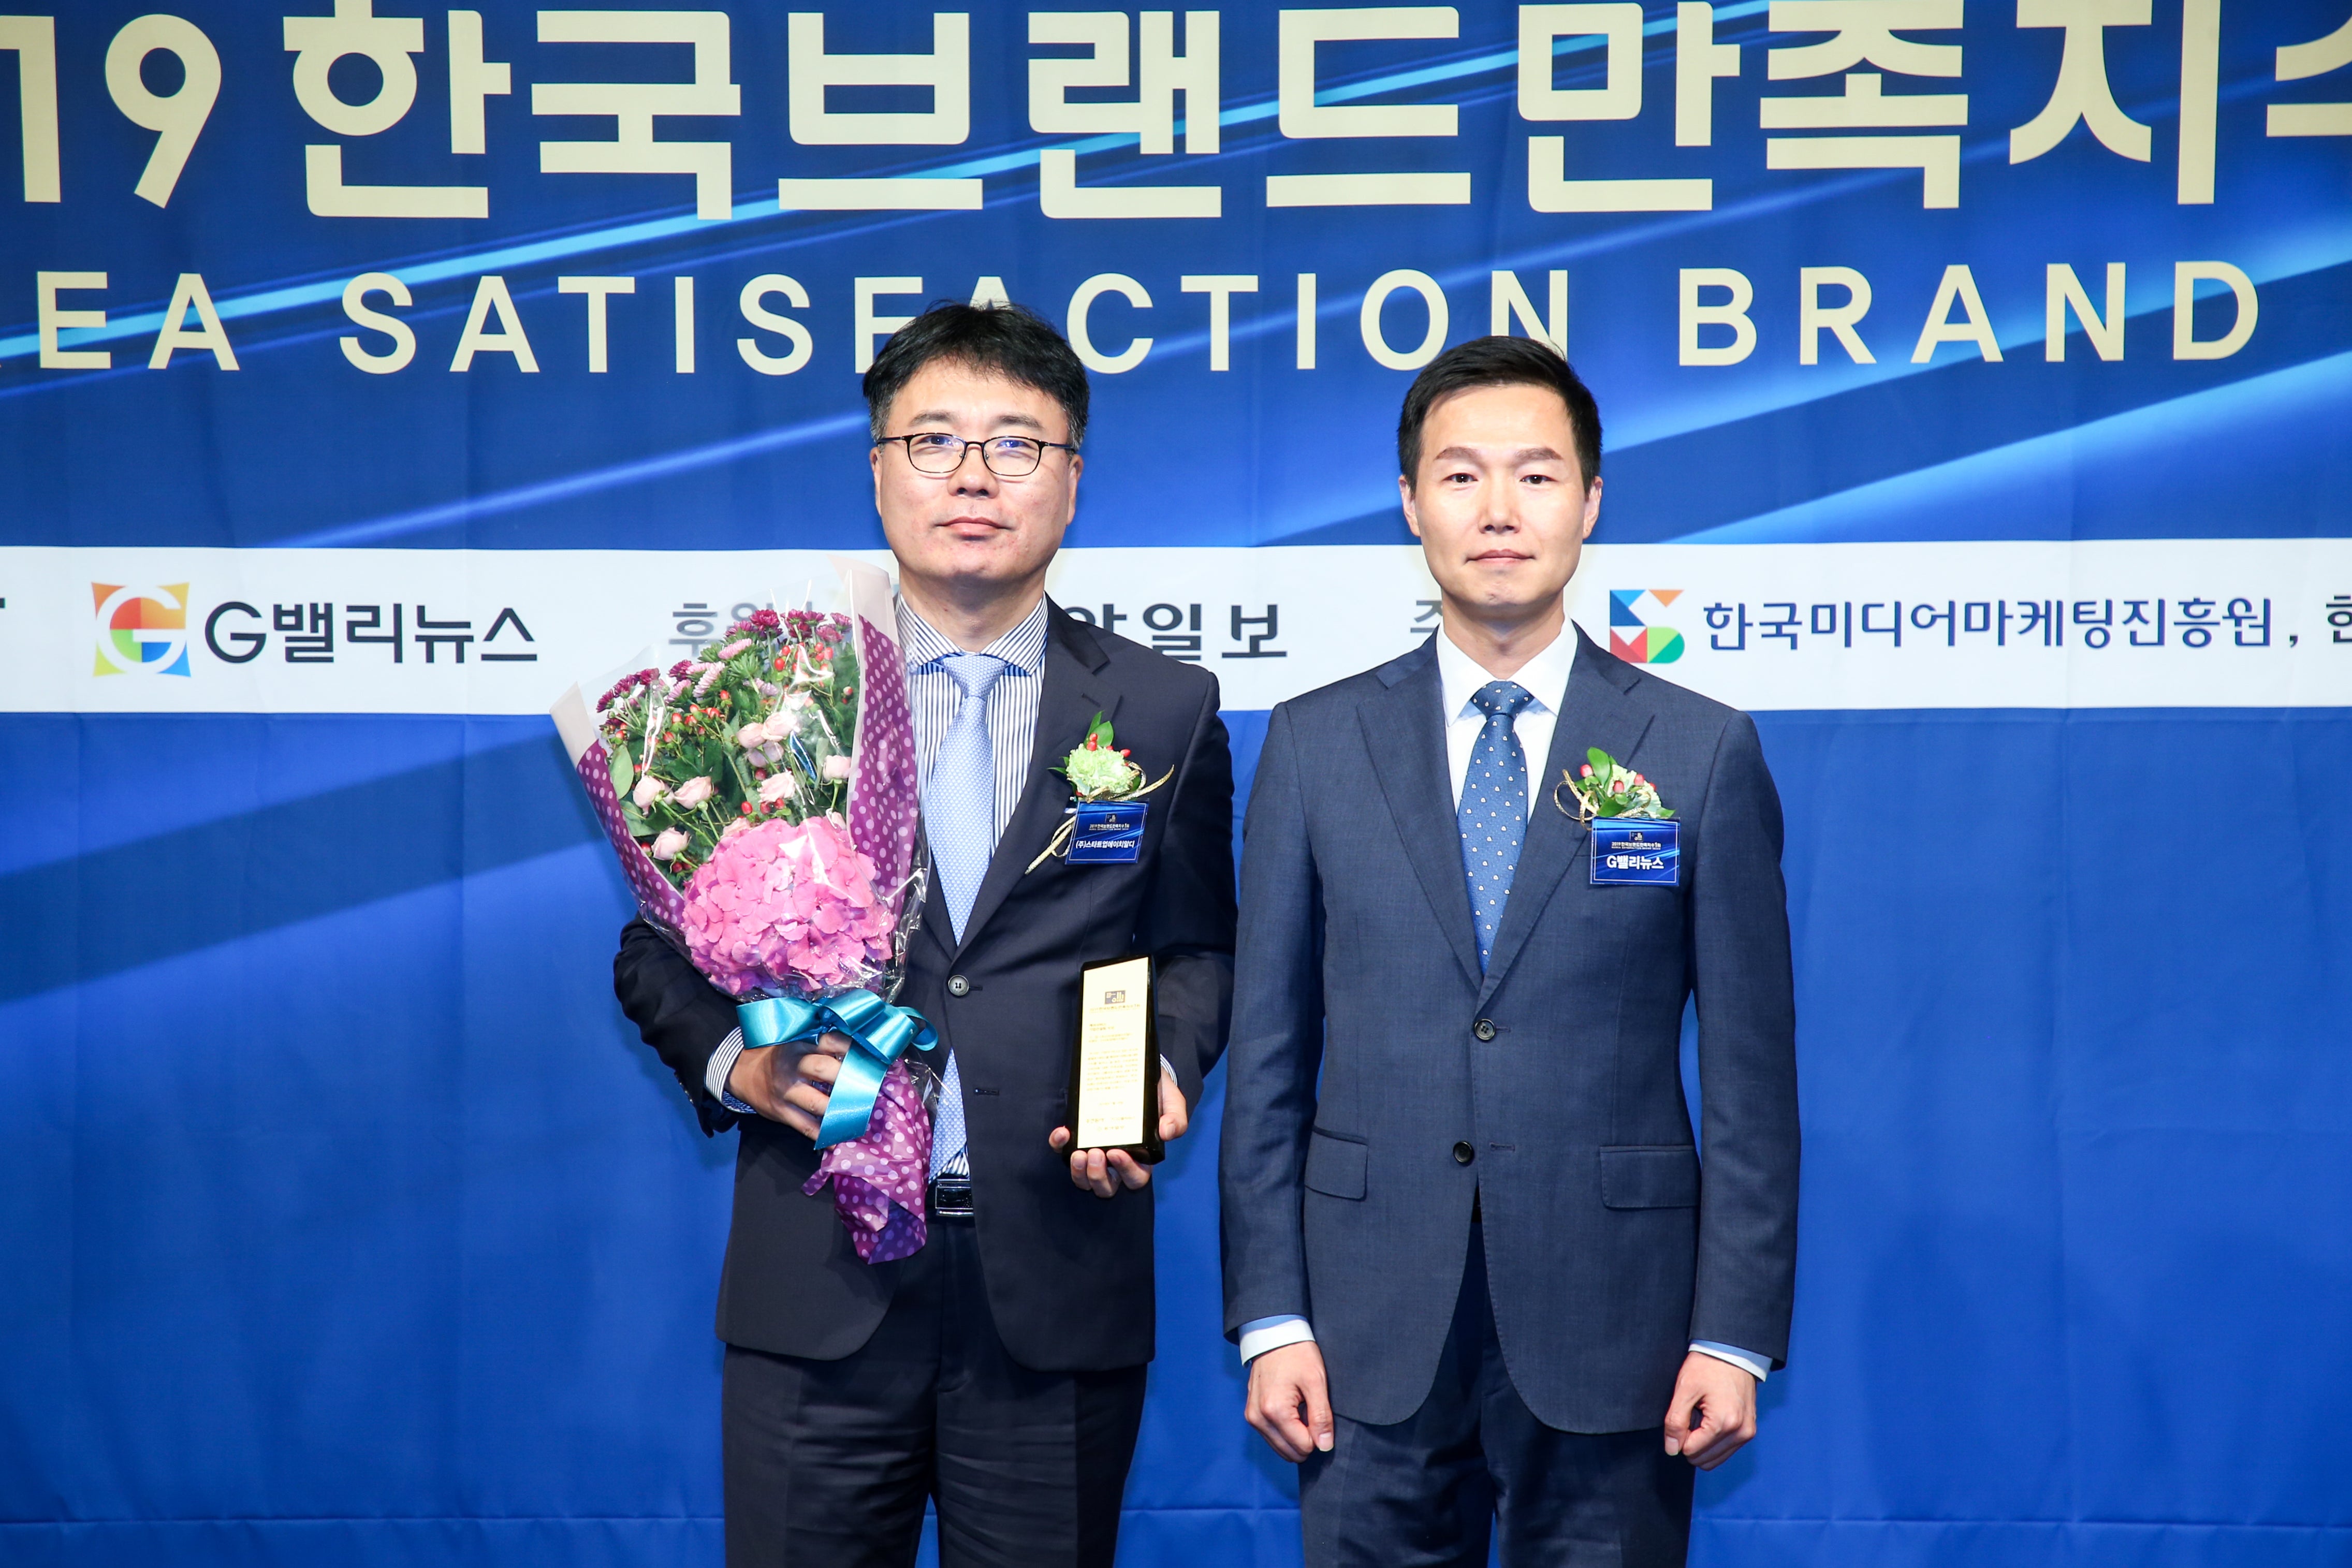 2019 한국브랜드만족지수1위 - 기업컨설팅 전문 브랜드 ‘스타트업에이치알디’